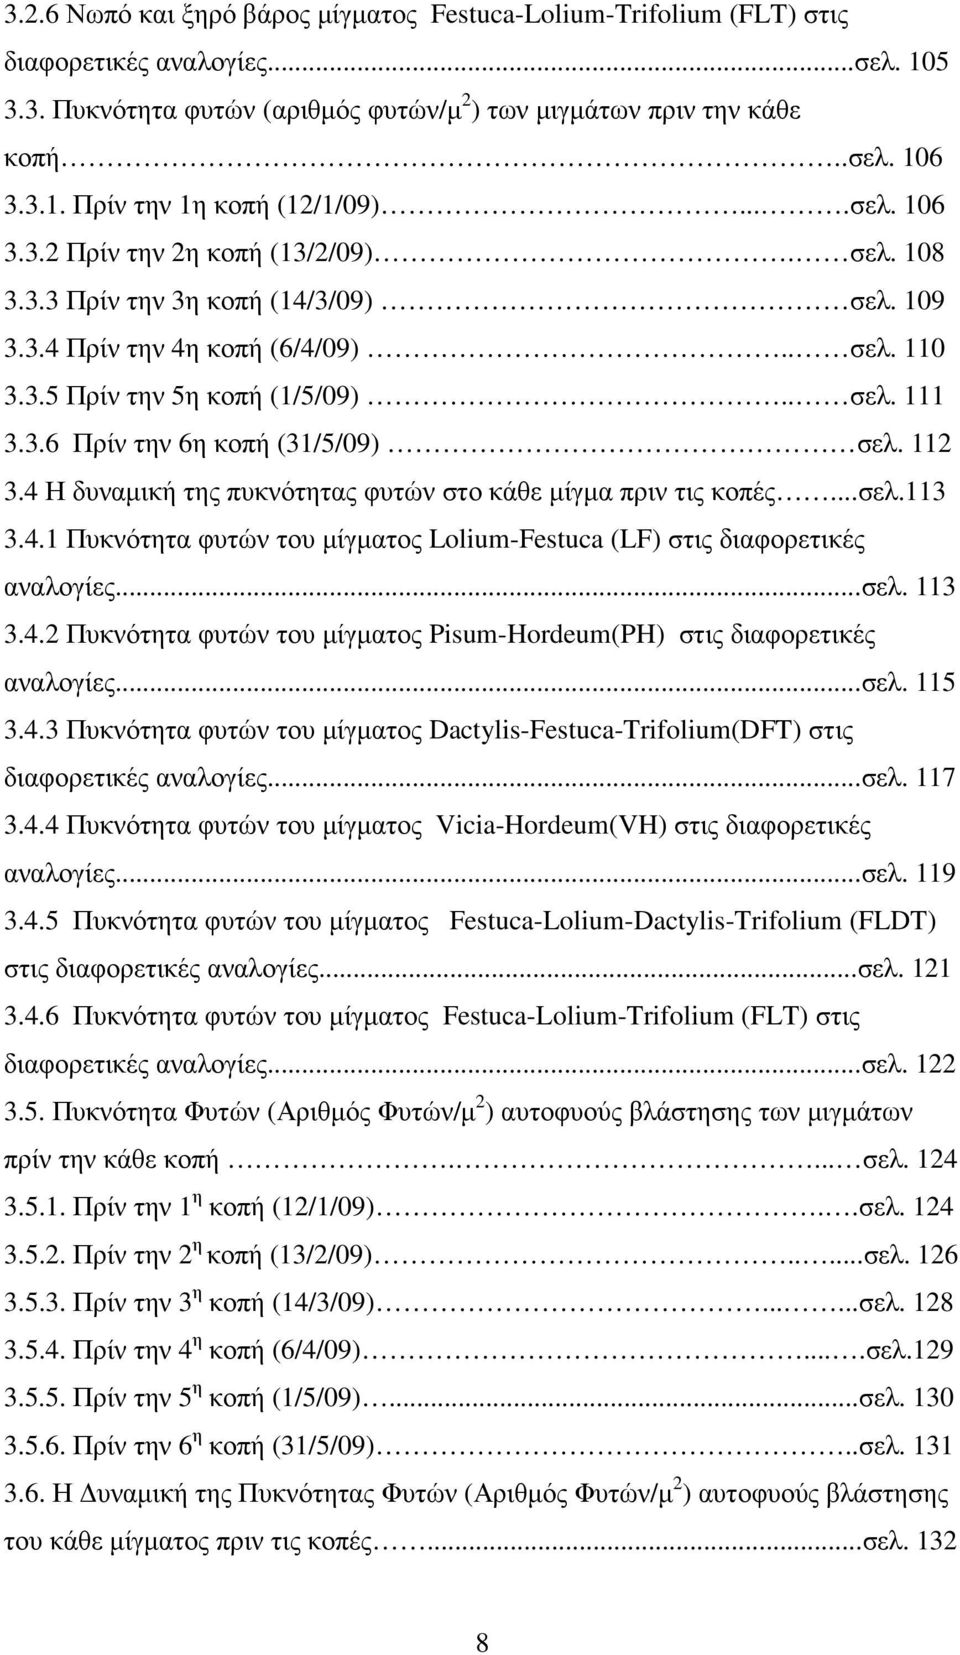 112 3.4 Η δυναµική της πυκνότητας φυτών στο κάθε µίγµα πριν τις κοπές...σελ.113 3.4.1 Πυκνότητα φυτών του µίγµατος Lolium-Festuca (LF) στις διαφορετικές αναλογίες...σελ. 113 3.4.2 Πυκνότητα φυτών του µίγµατος Pisum-Hordeum(PH) στις διαφορετικές αναλογίες.